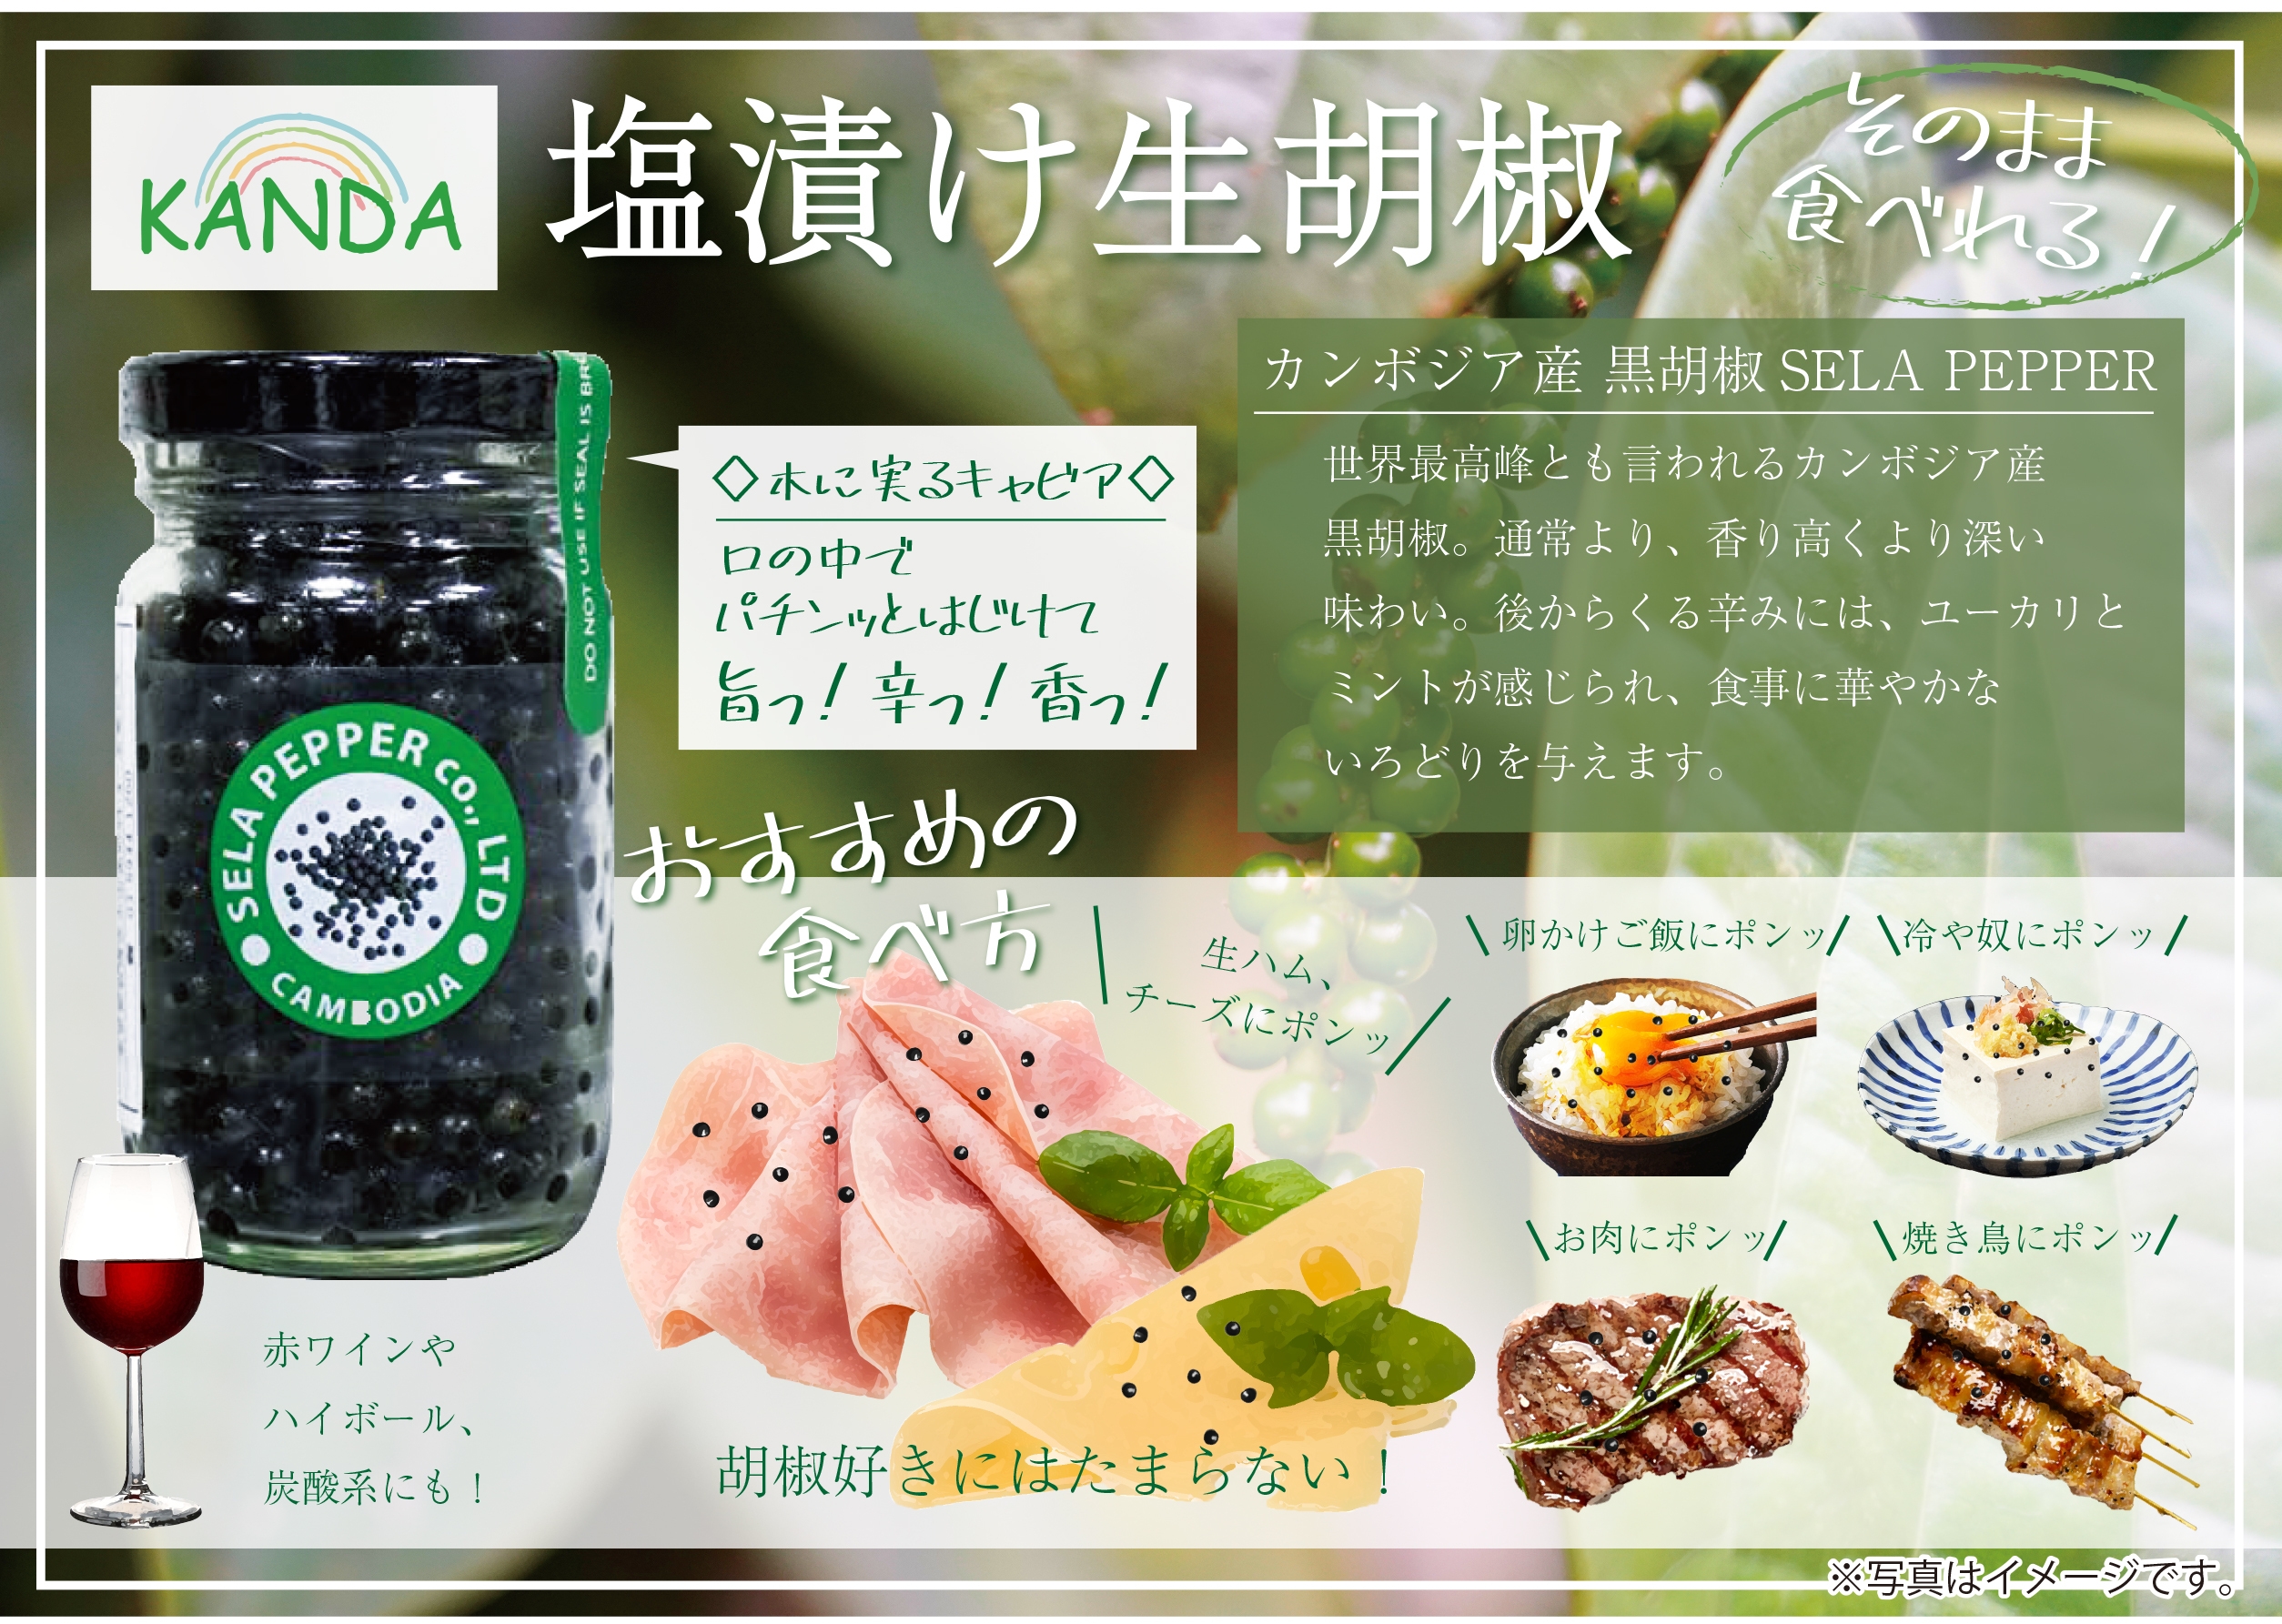 SELA PEPPER ブラックペッパー ミル付・塩漬け生胡椒 | Gift Pad